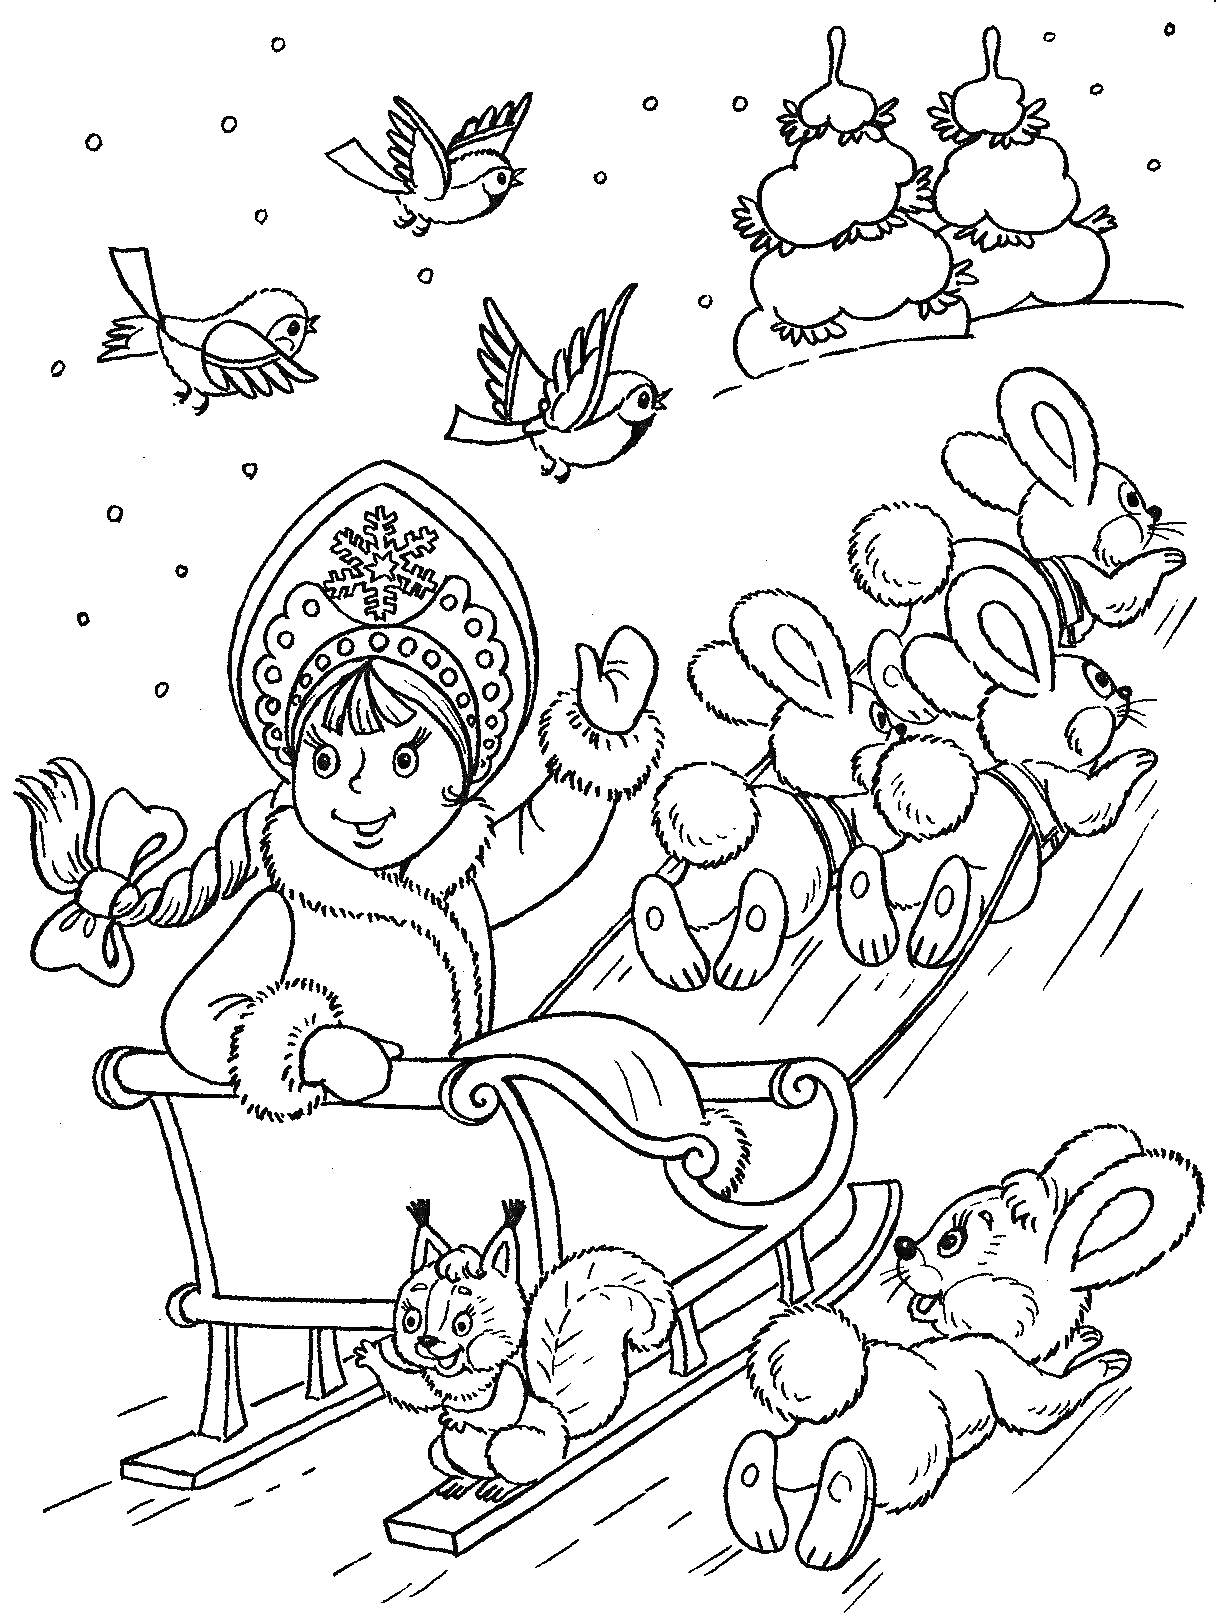 Раскраска Девочка в зимней одежде и кокошнике едет на санках с белками, запряжёнными зайцами, на фоне зимнего леса